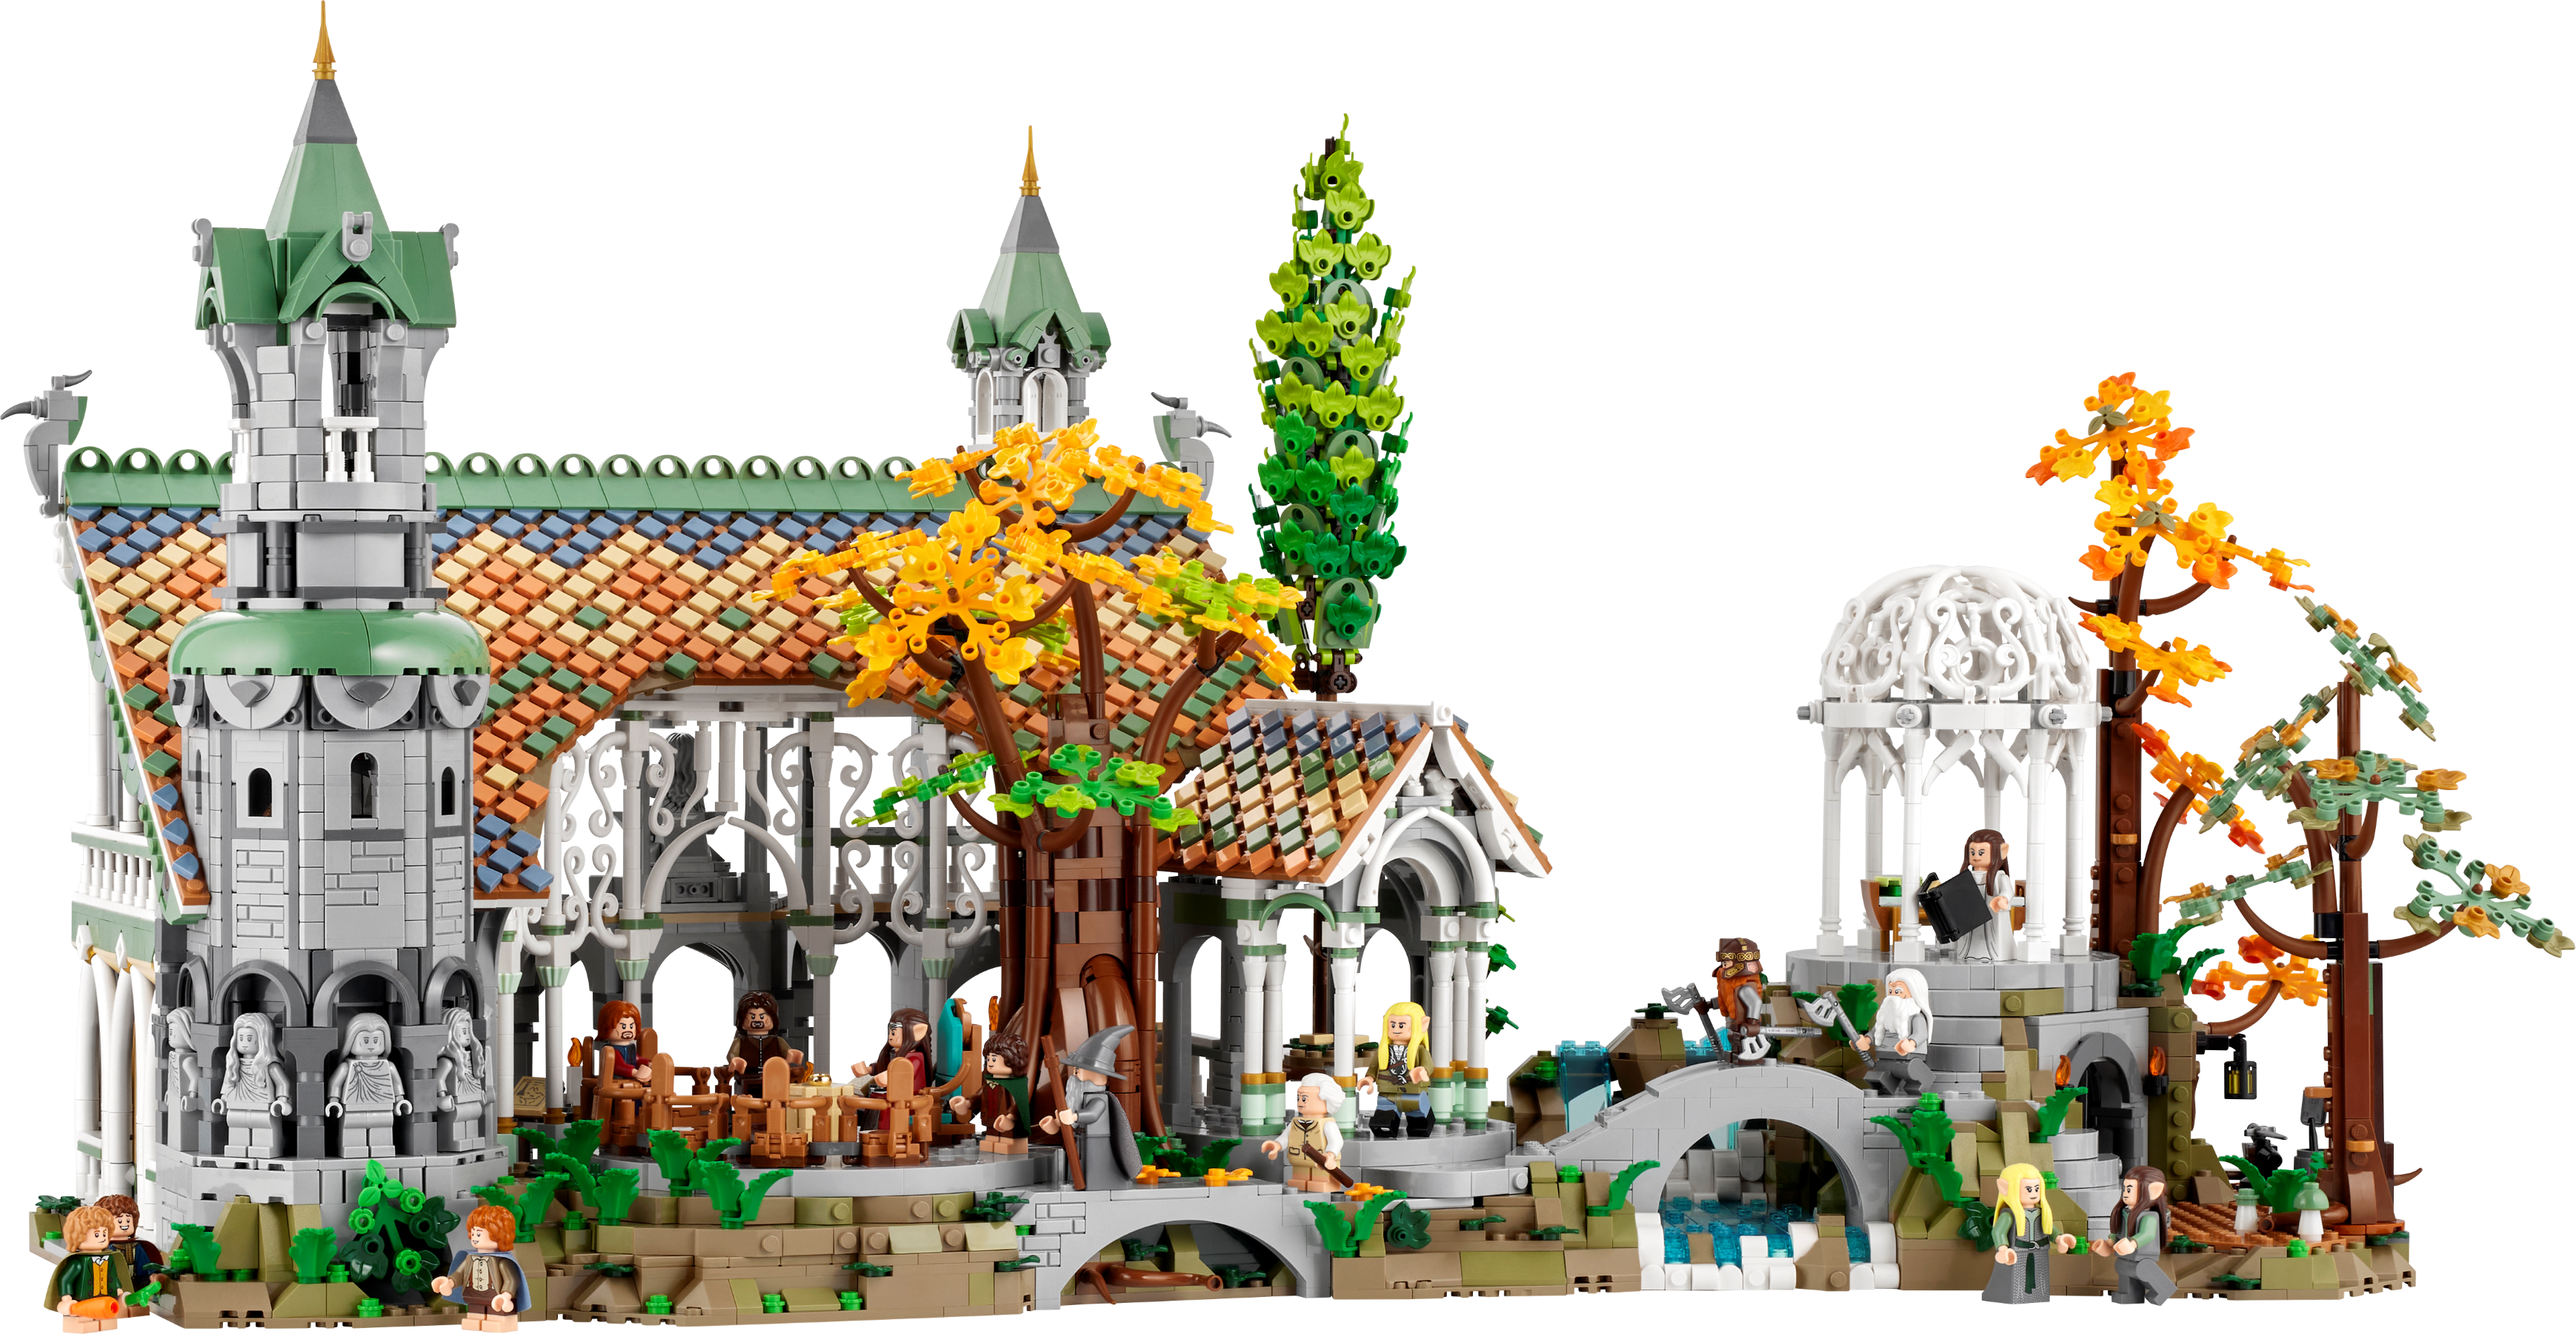 LEGO® Le seigneur des anneaux Fondcombe 10316